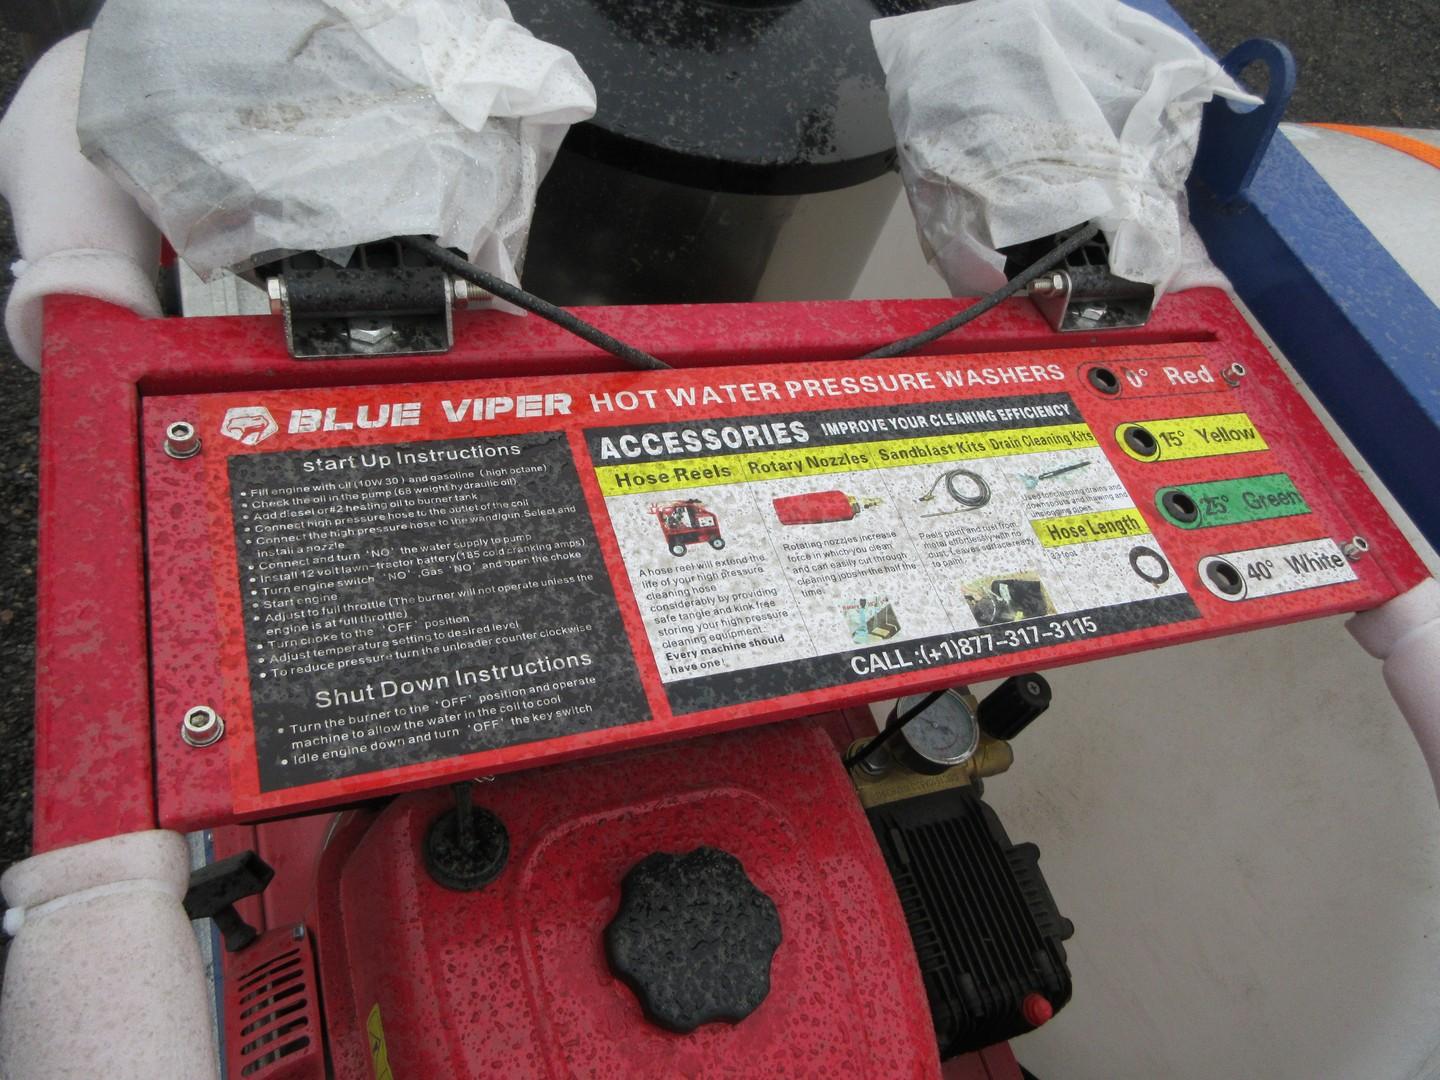 Blue Viper Hot Water Pressure Washer